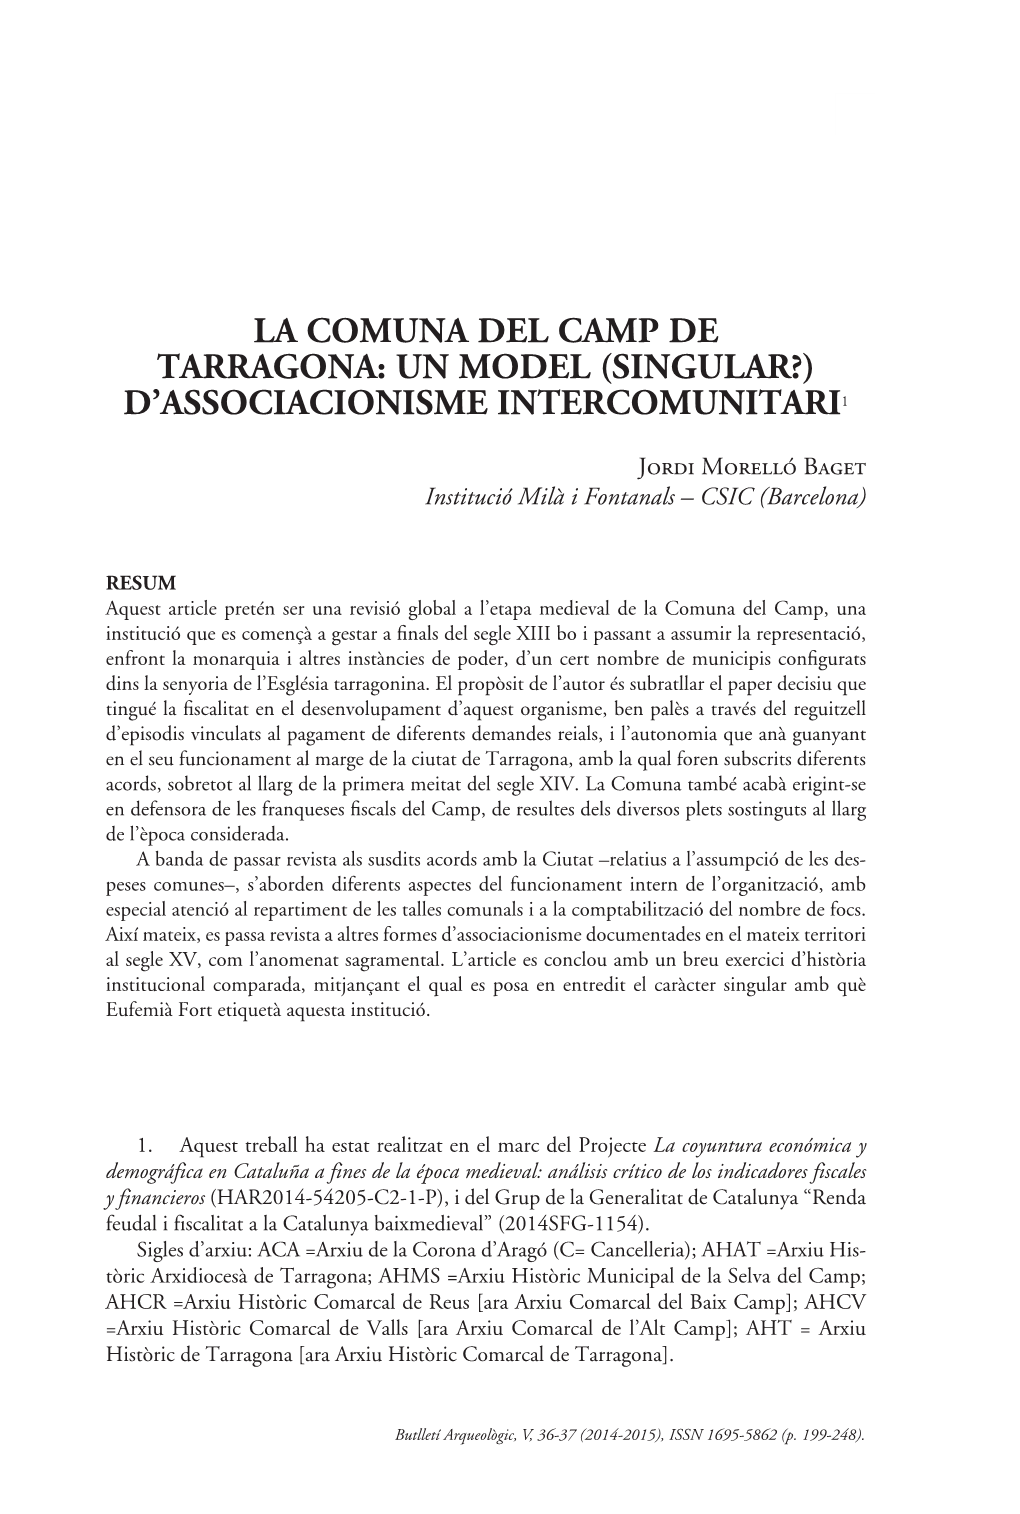 La Comuna Del Camp De Tarragona: Un Model (Singular?) D’Associacionisme Intercomunitari1